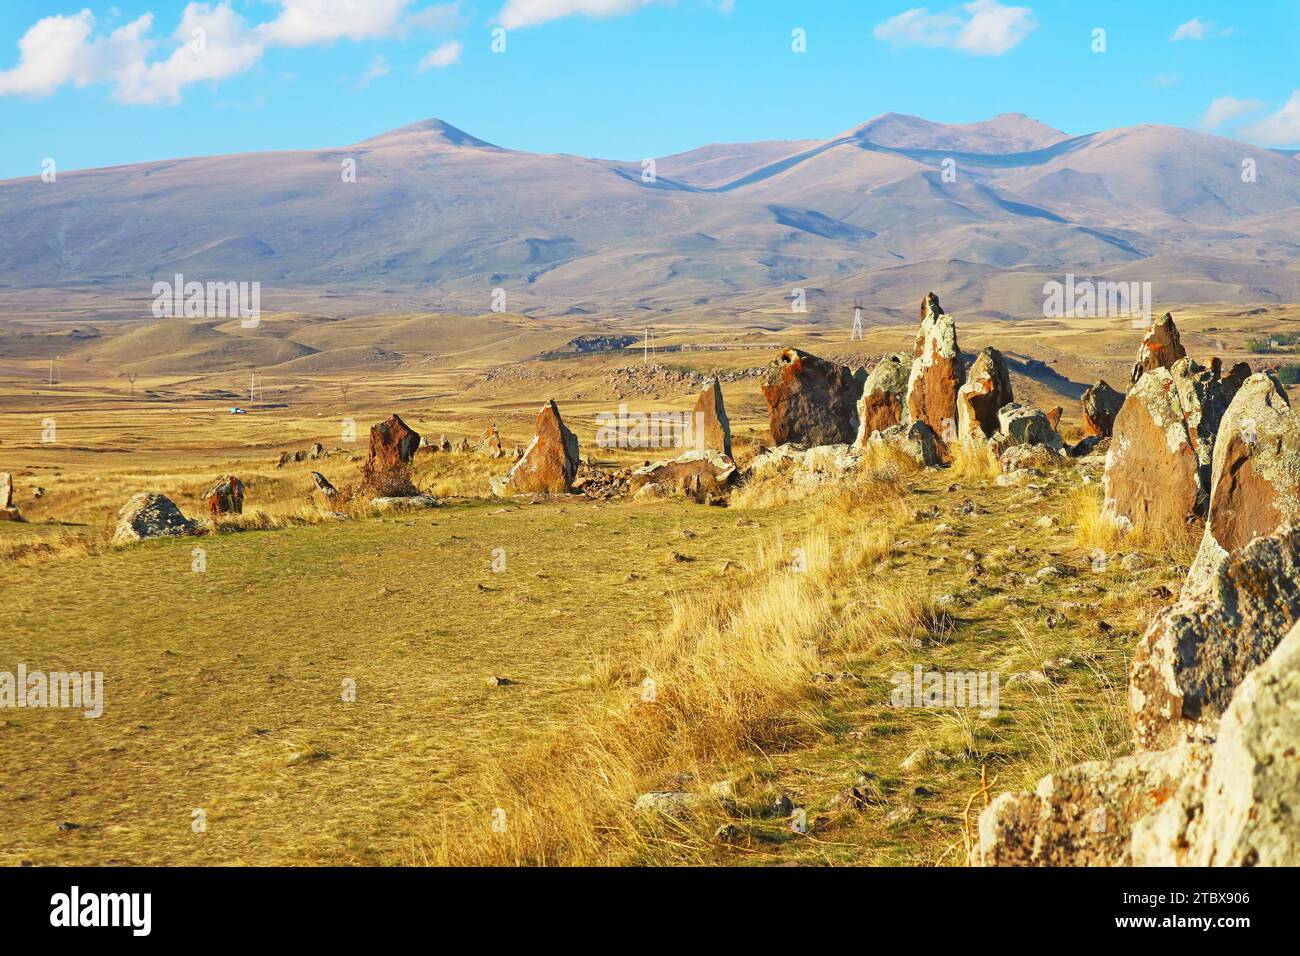 Site archéologique préhistorique de Carahunge ou Stonehenge arménien dans la province de Syunik en Arménie Banque D'Images